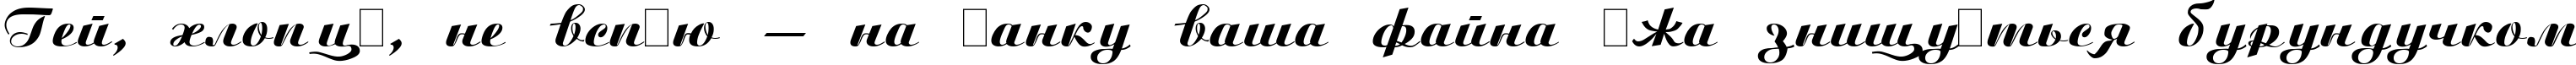 Пример написания шрифтом Script Plain:001.001 текста на украинском